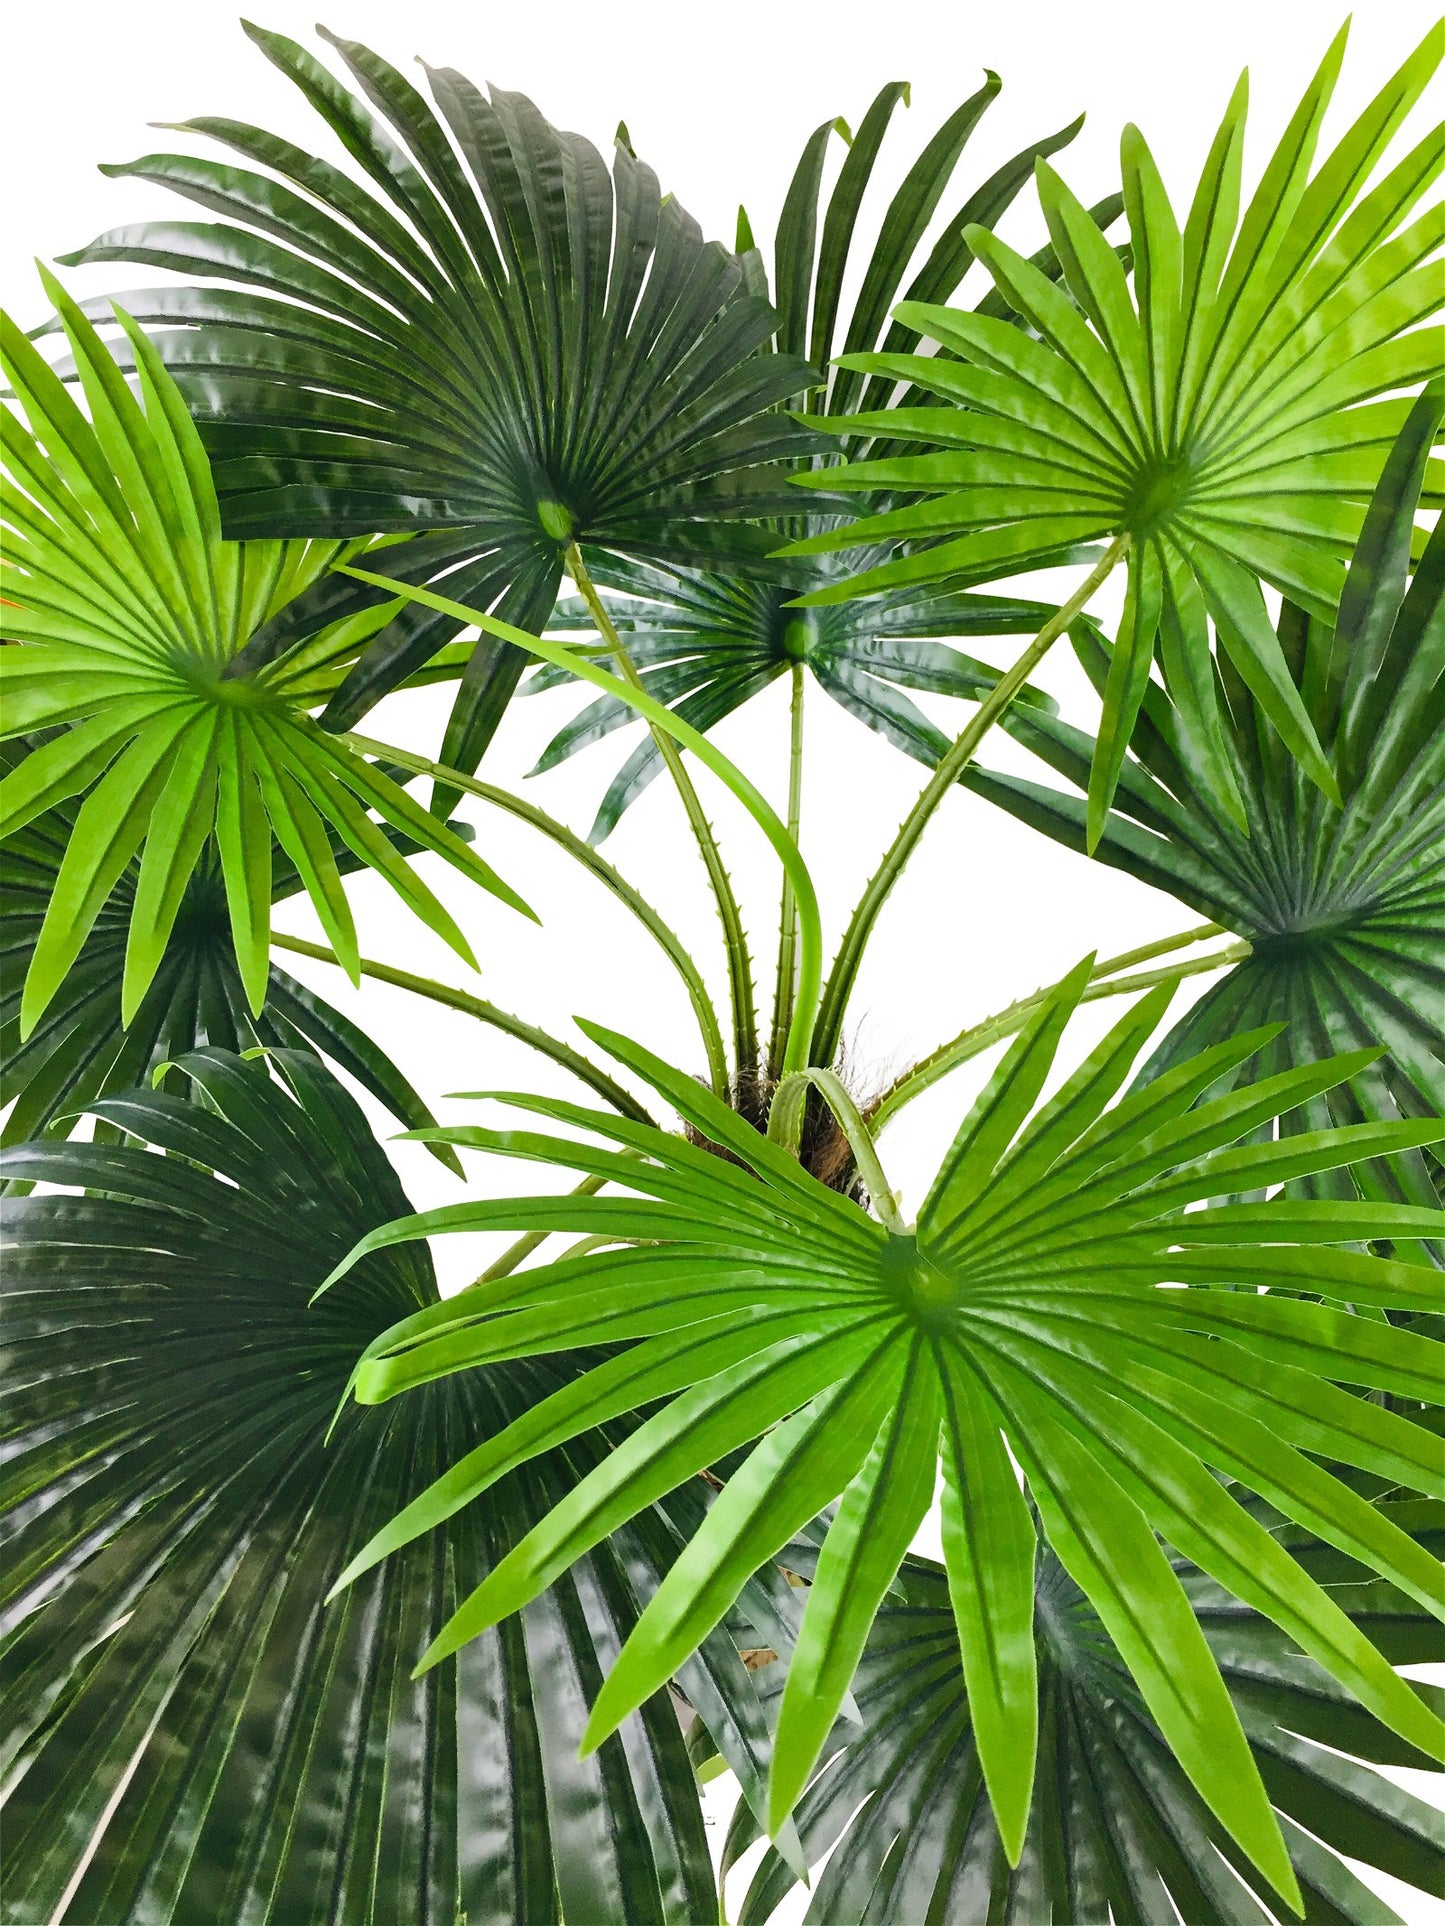 Artificial Fan Palm Tree 150cm